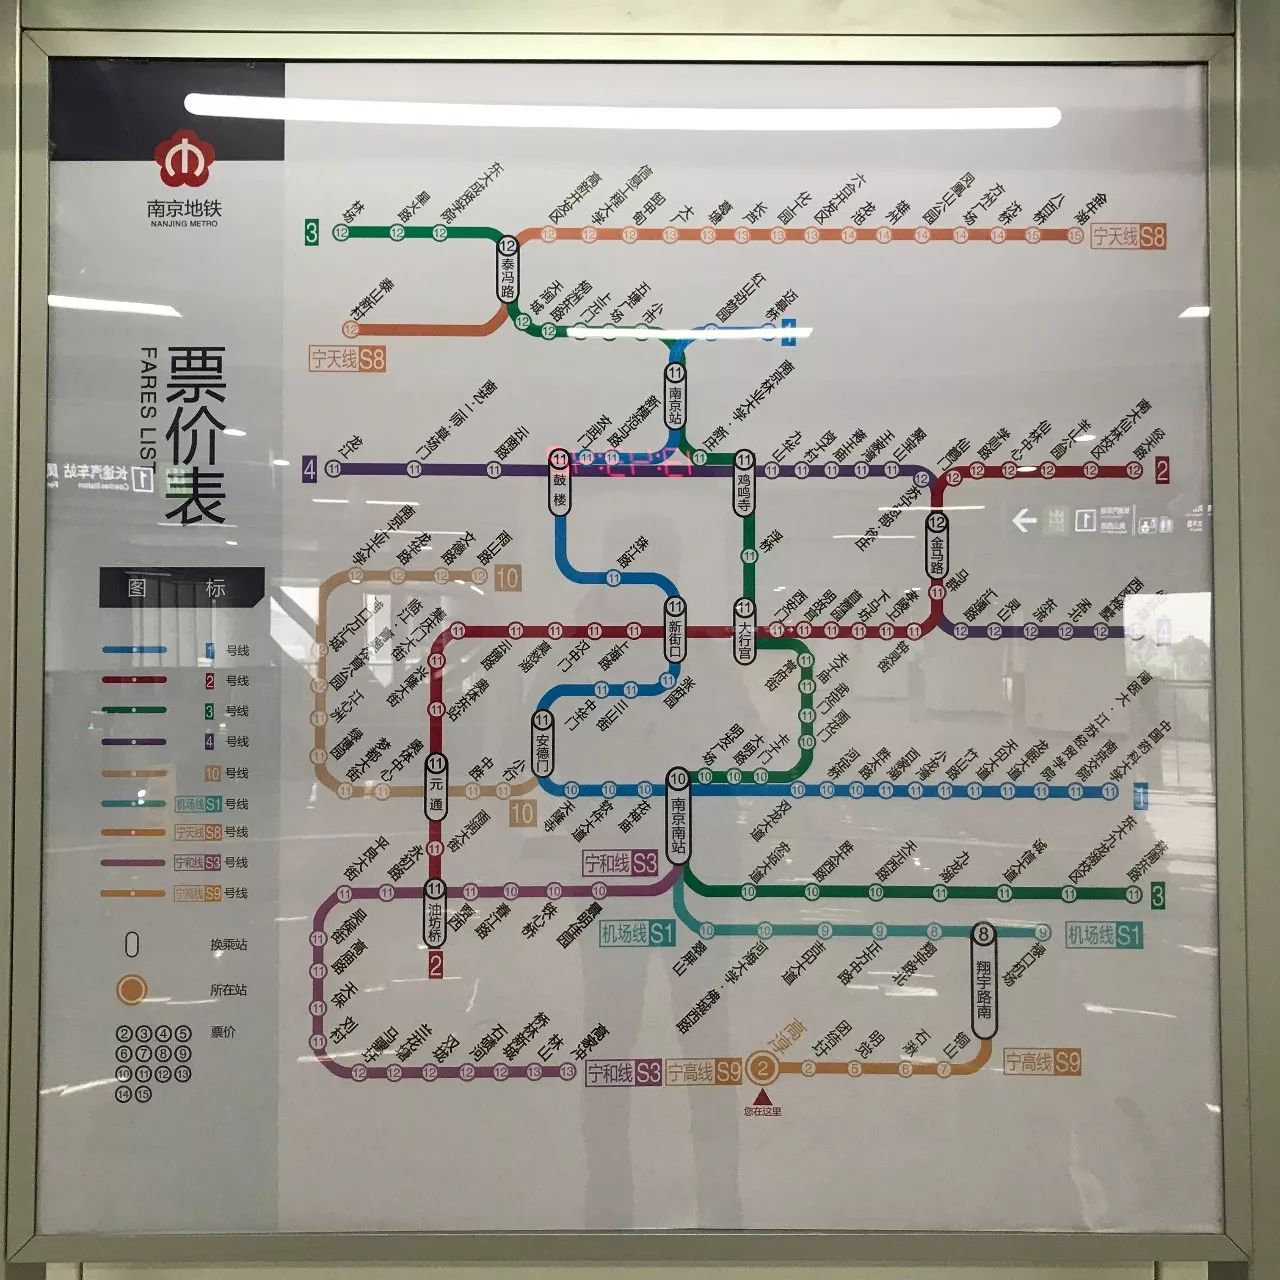 南京地铁S9号线路图图片